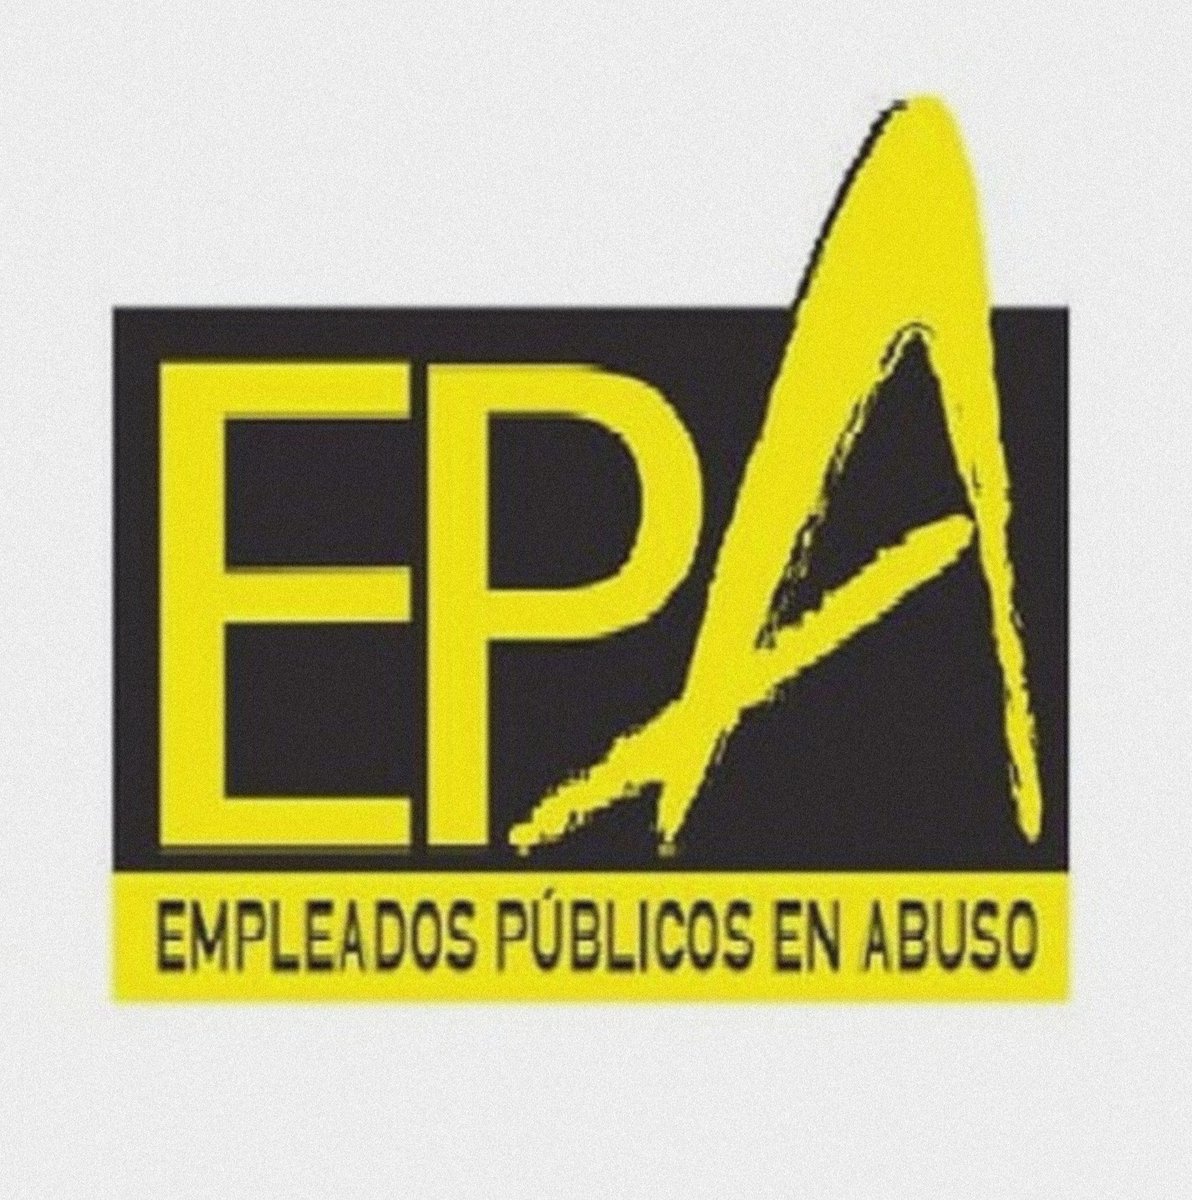 -🔥 #FijezaYa 🔥- 📖 #Noticias :
#FelizSabado y #FinDeSemana #BuenosDias #IndefinidoNoFijo 😶‍🌫️
👉 @eu_commission @Europarl_ES 👈
👉 Con el #PeriodicoTwitter 130 de los #Interinos y #Laborales 
- (#PEPA130 ) - #Whistleblower del #Abuso en el #Empleo #Publico con #Temporalidad en…